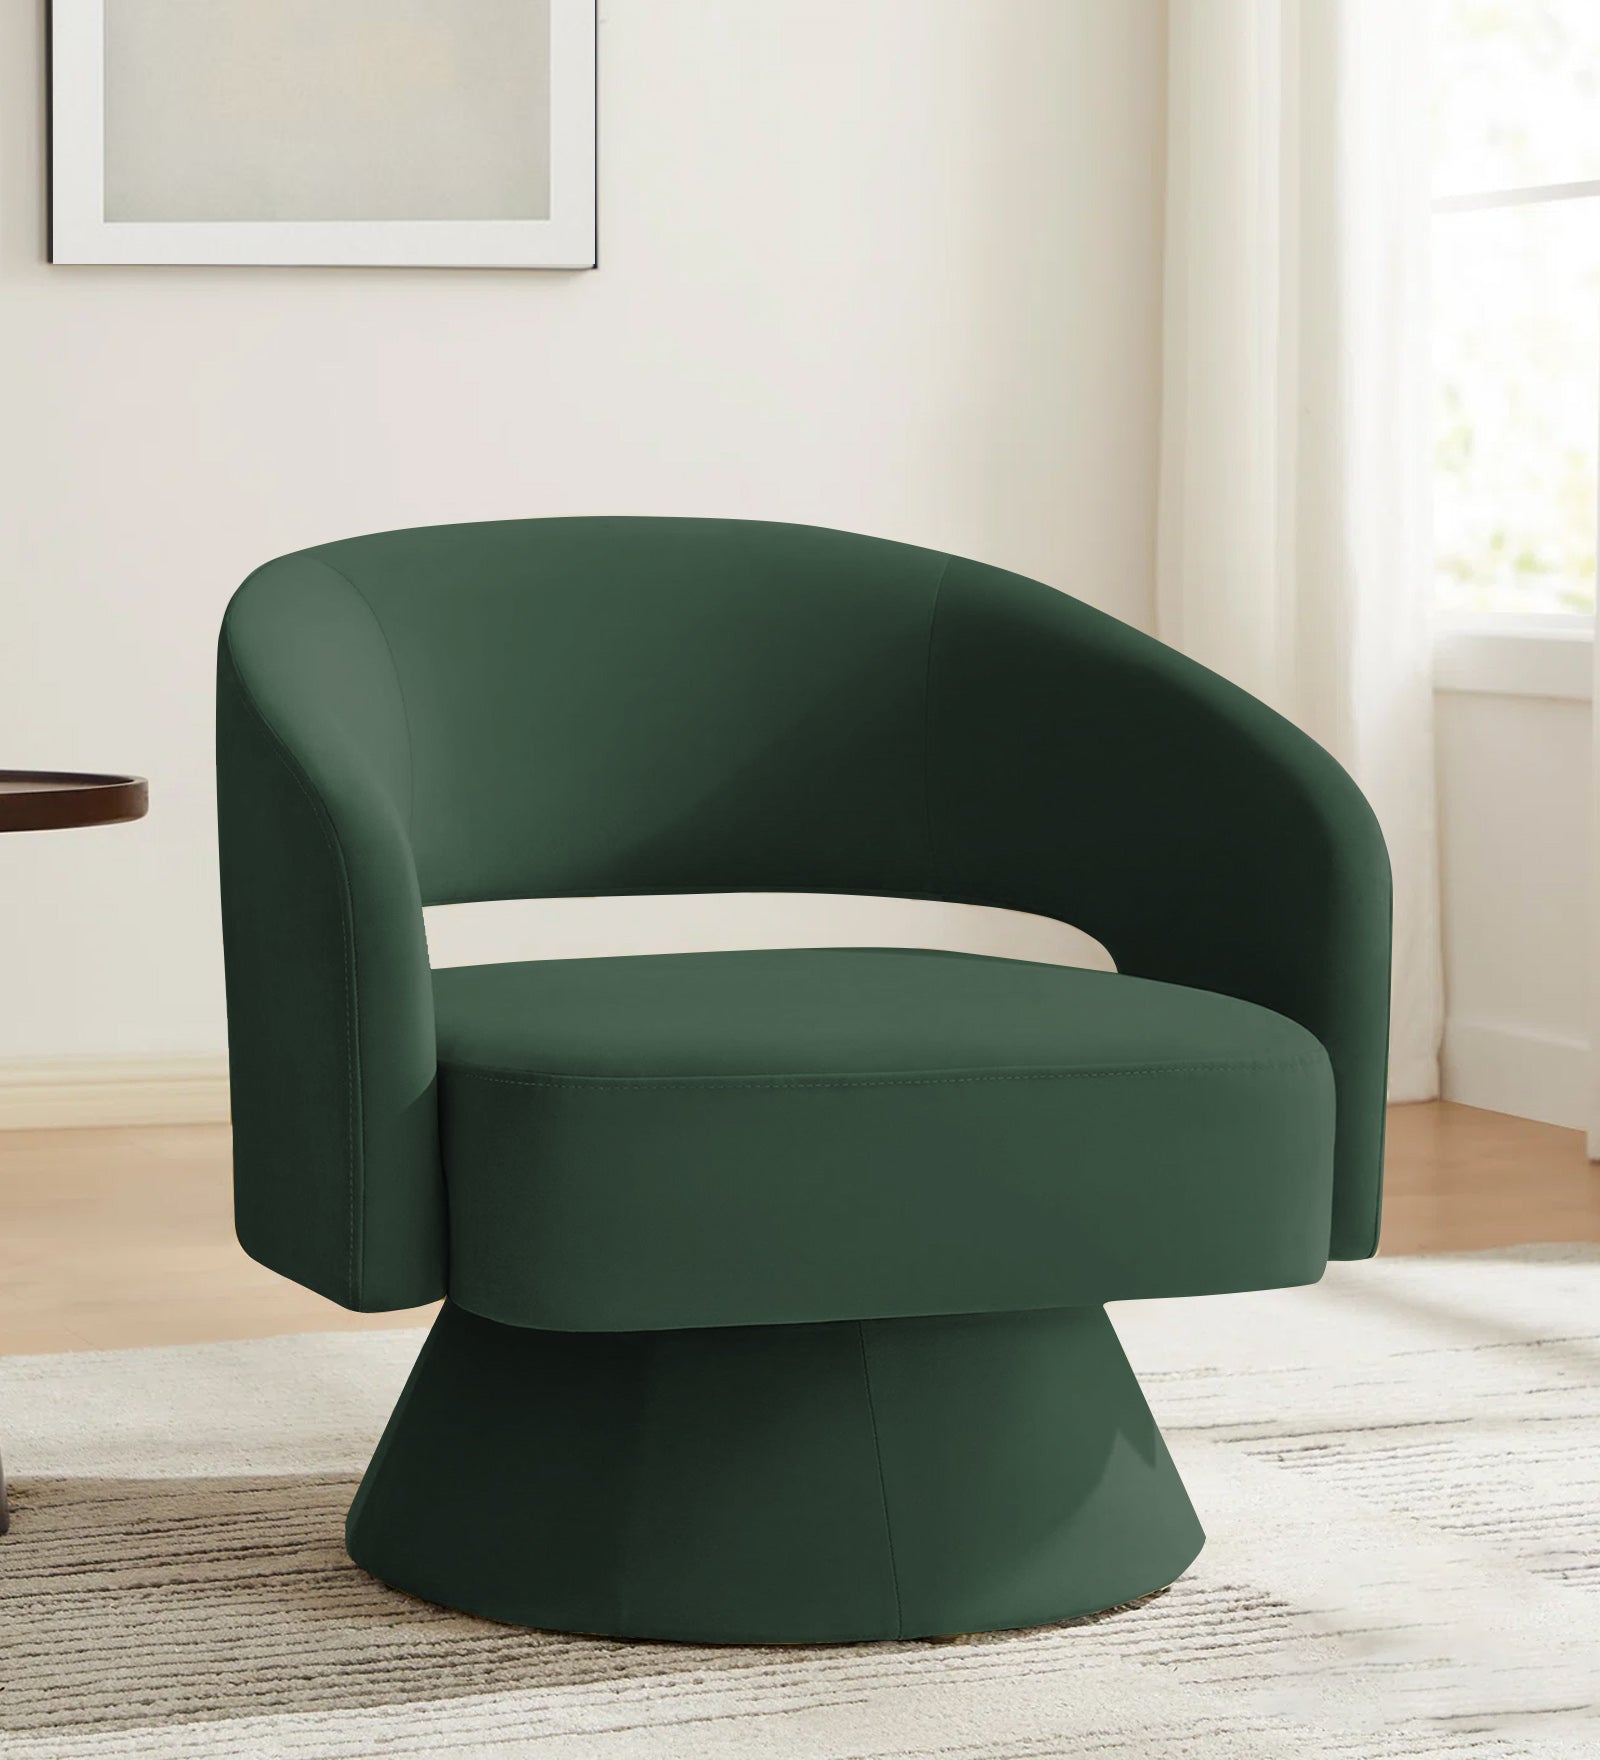 Pendra Velvet Swivel Chair in Amazon Green Colour